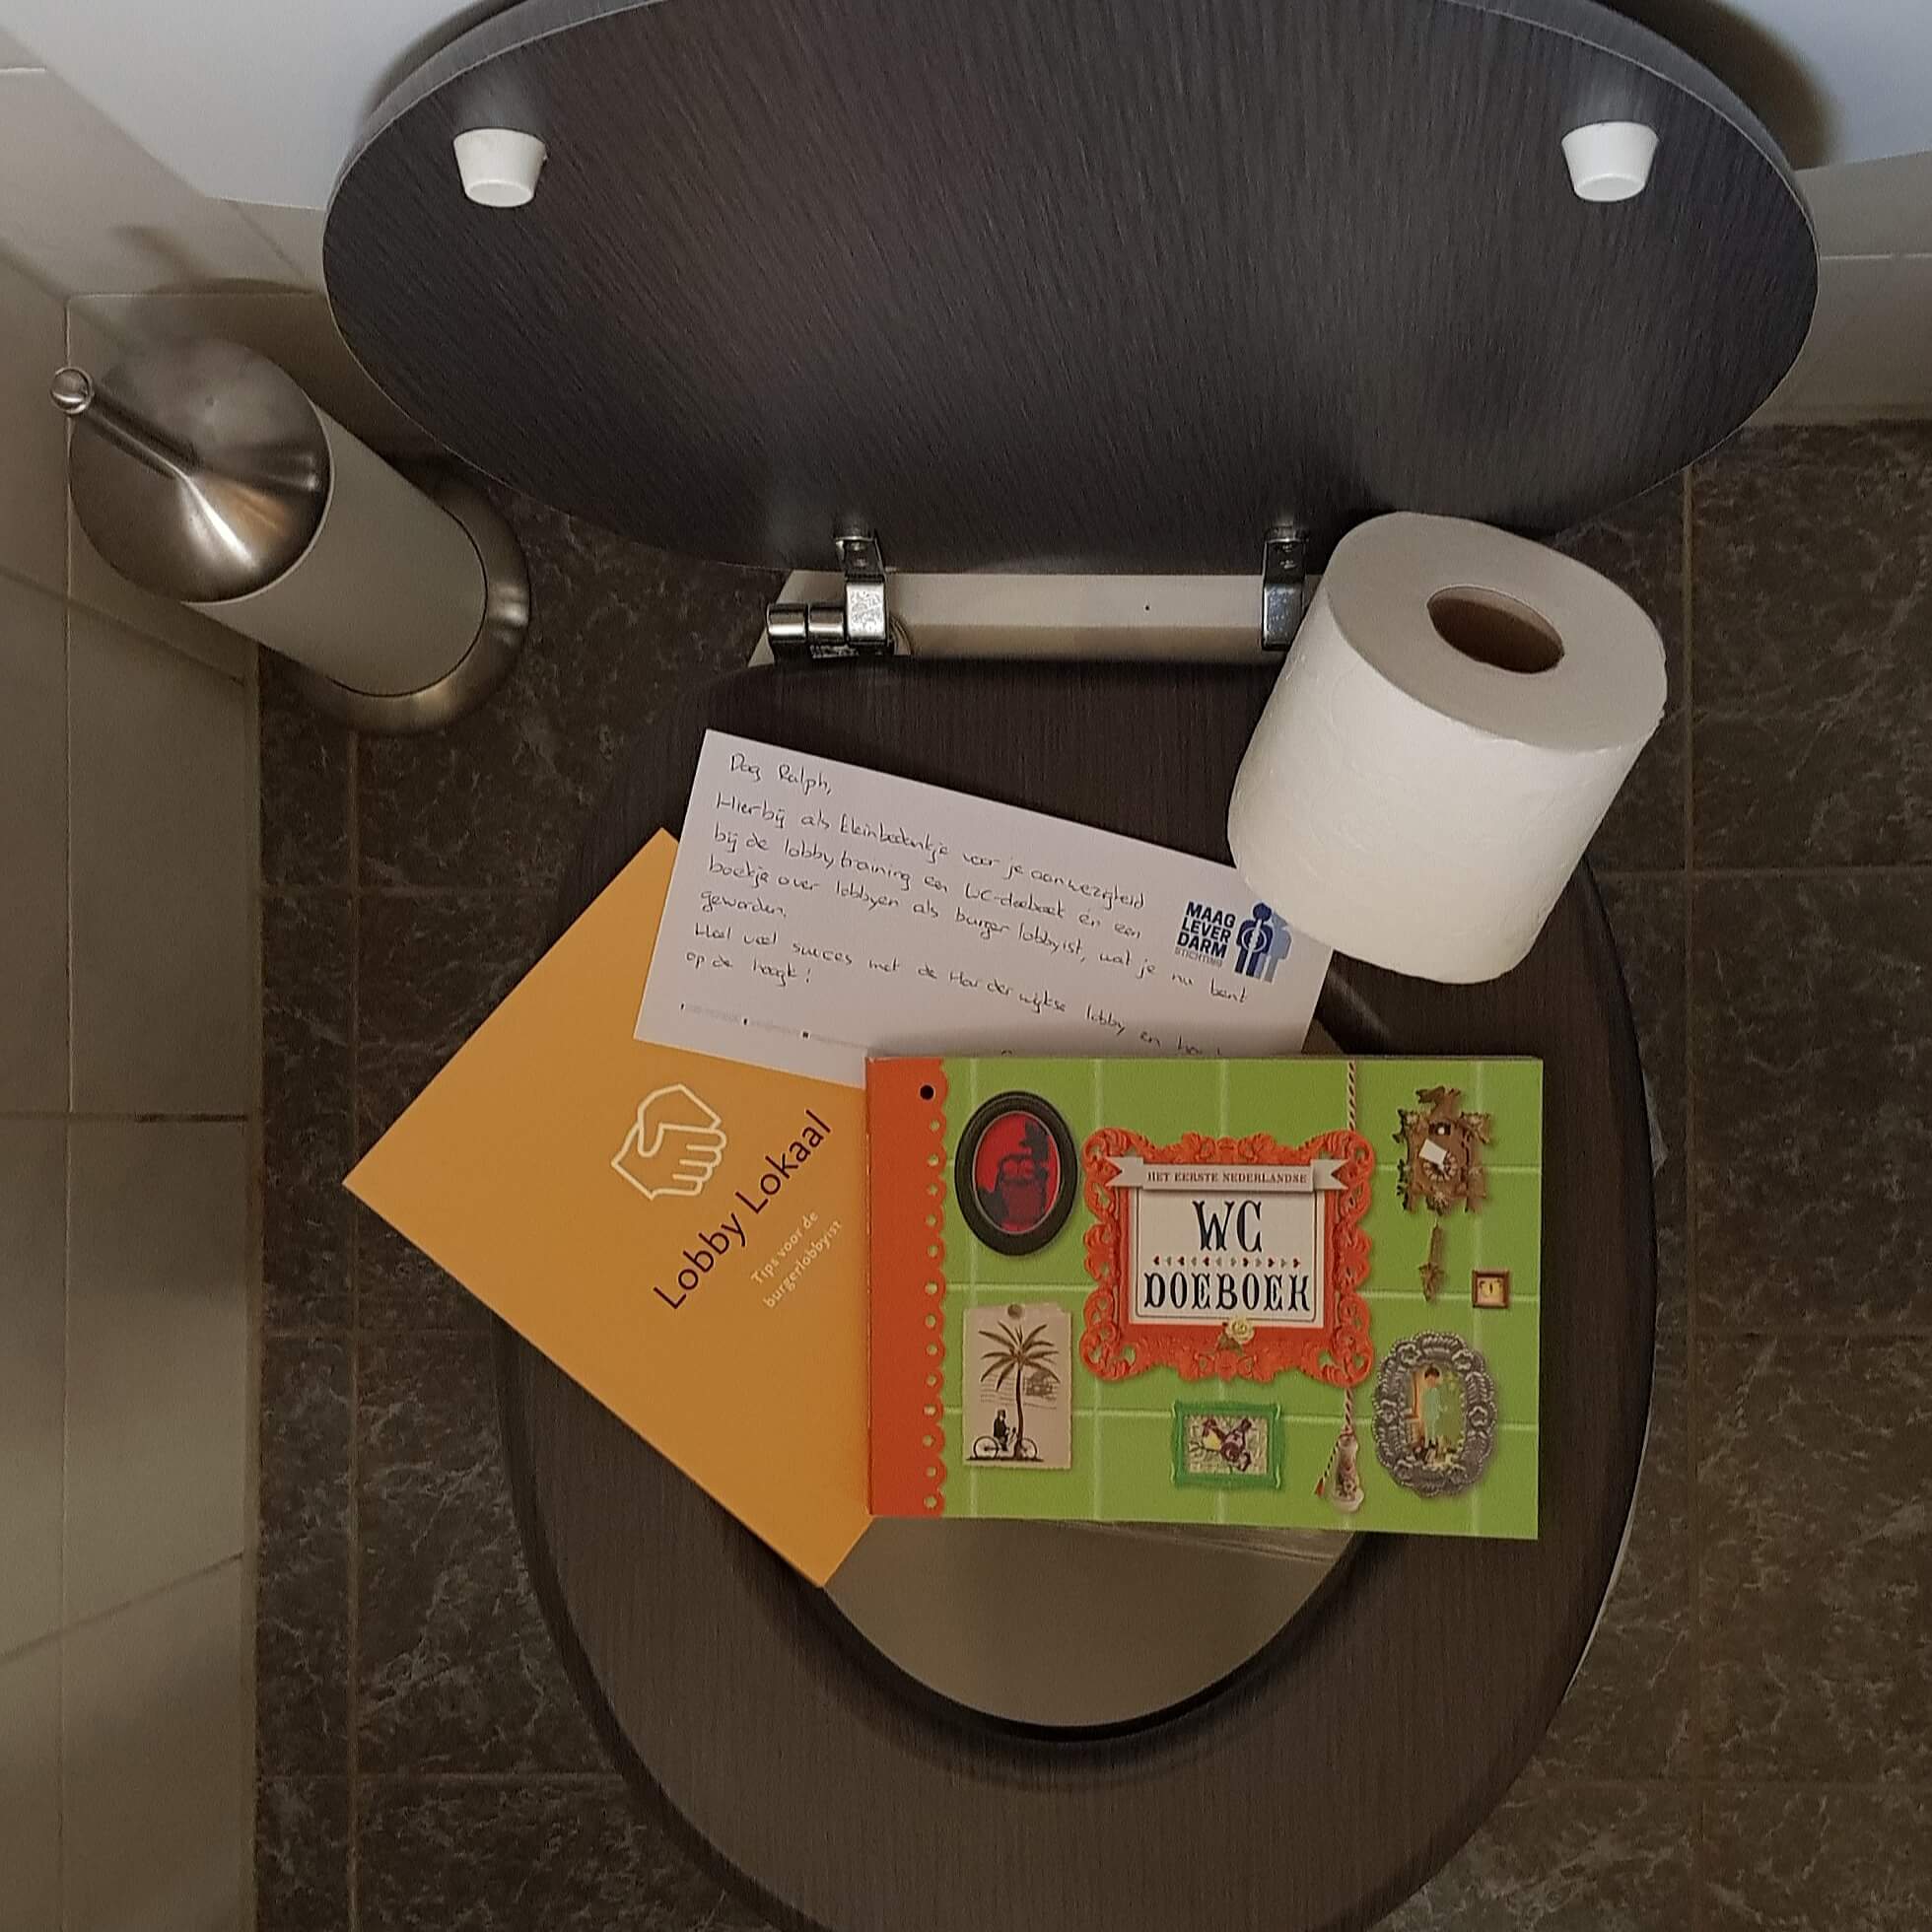 Foto van bedankje van de maag lever darm stichting dat ralph stoove zich inzet voor de politieke lobby voor openbare toiletten in Harderwijk